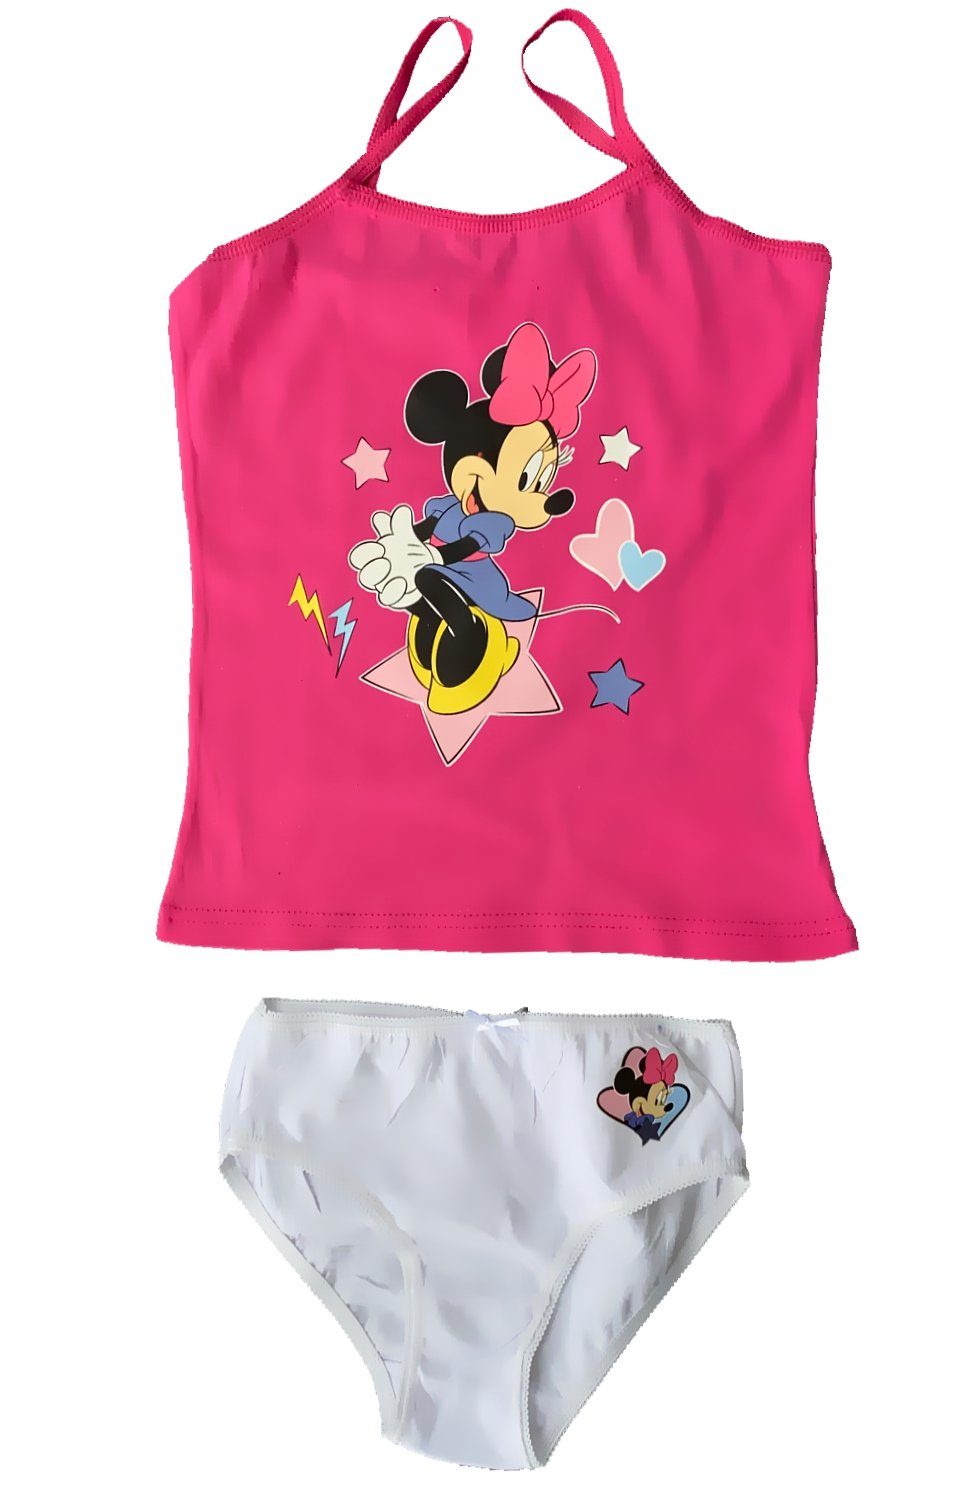 Kinder Mädchen Unterwäsche Set 2 Teilig Baumwolle Minnie Unterhemd mit Slip Gr98 